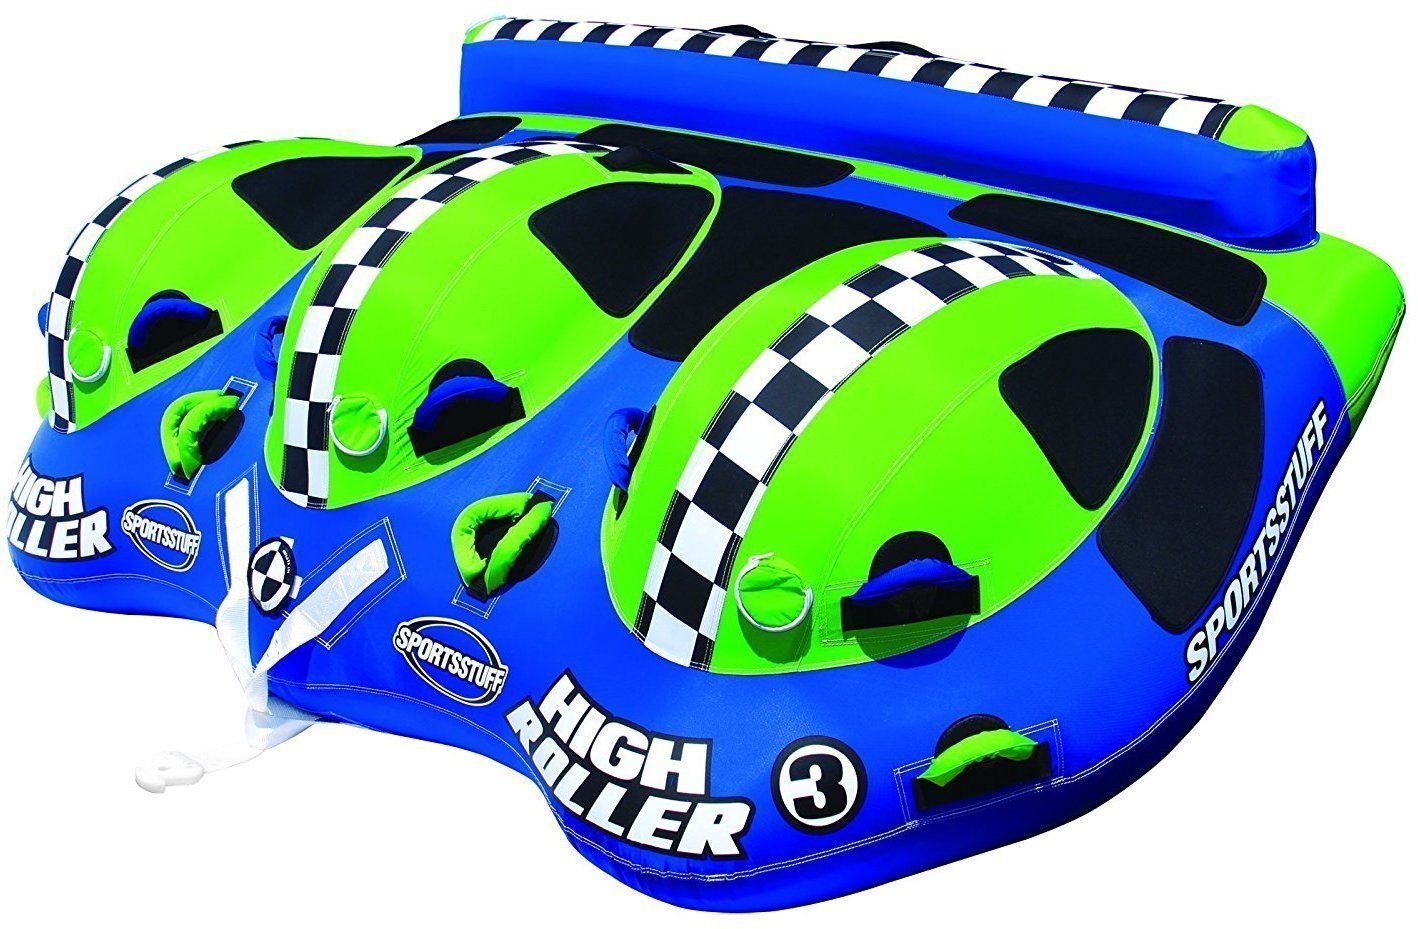 Tahadlo za loď Sportsstuff Towable High Roller 3 Personen Blue/Green